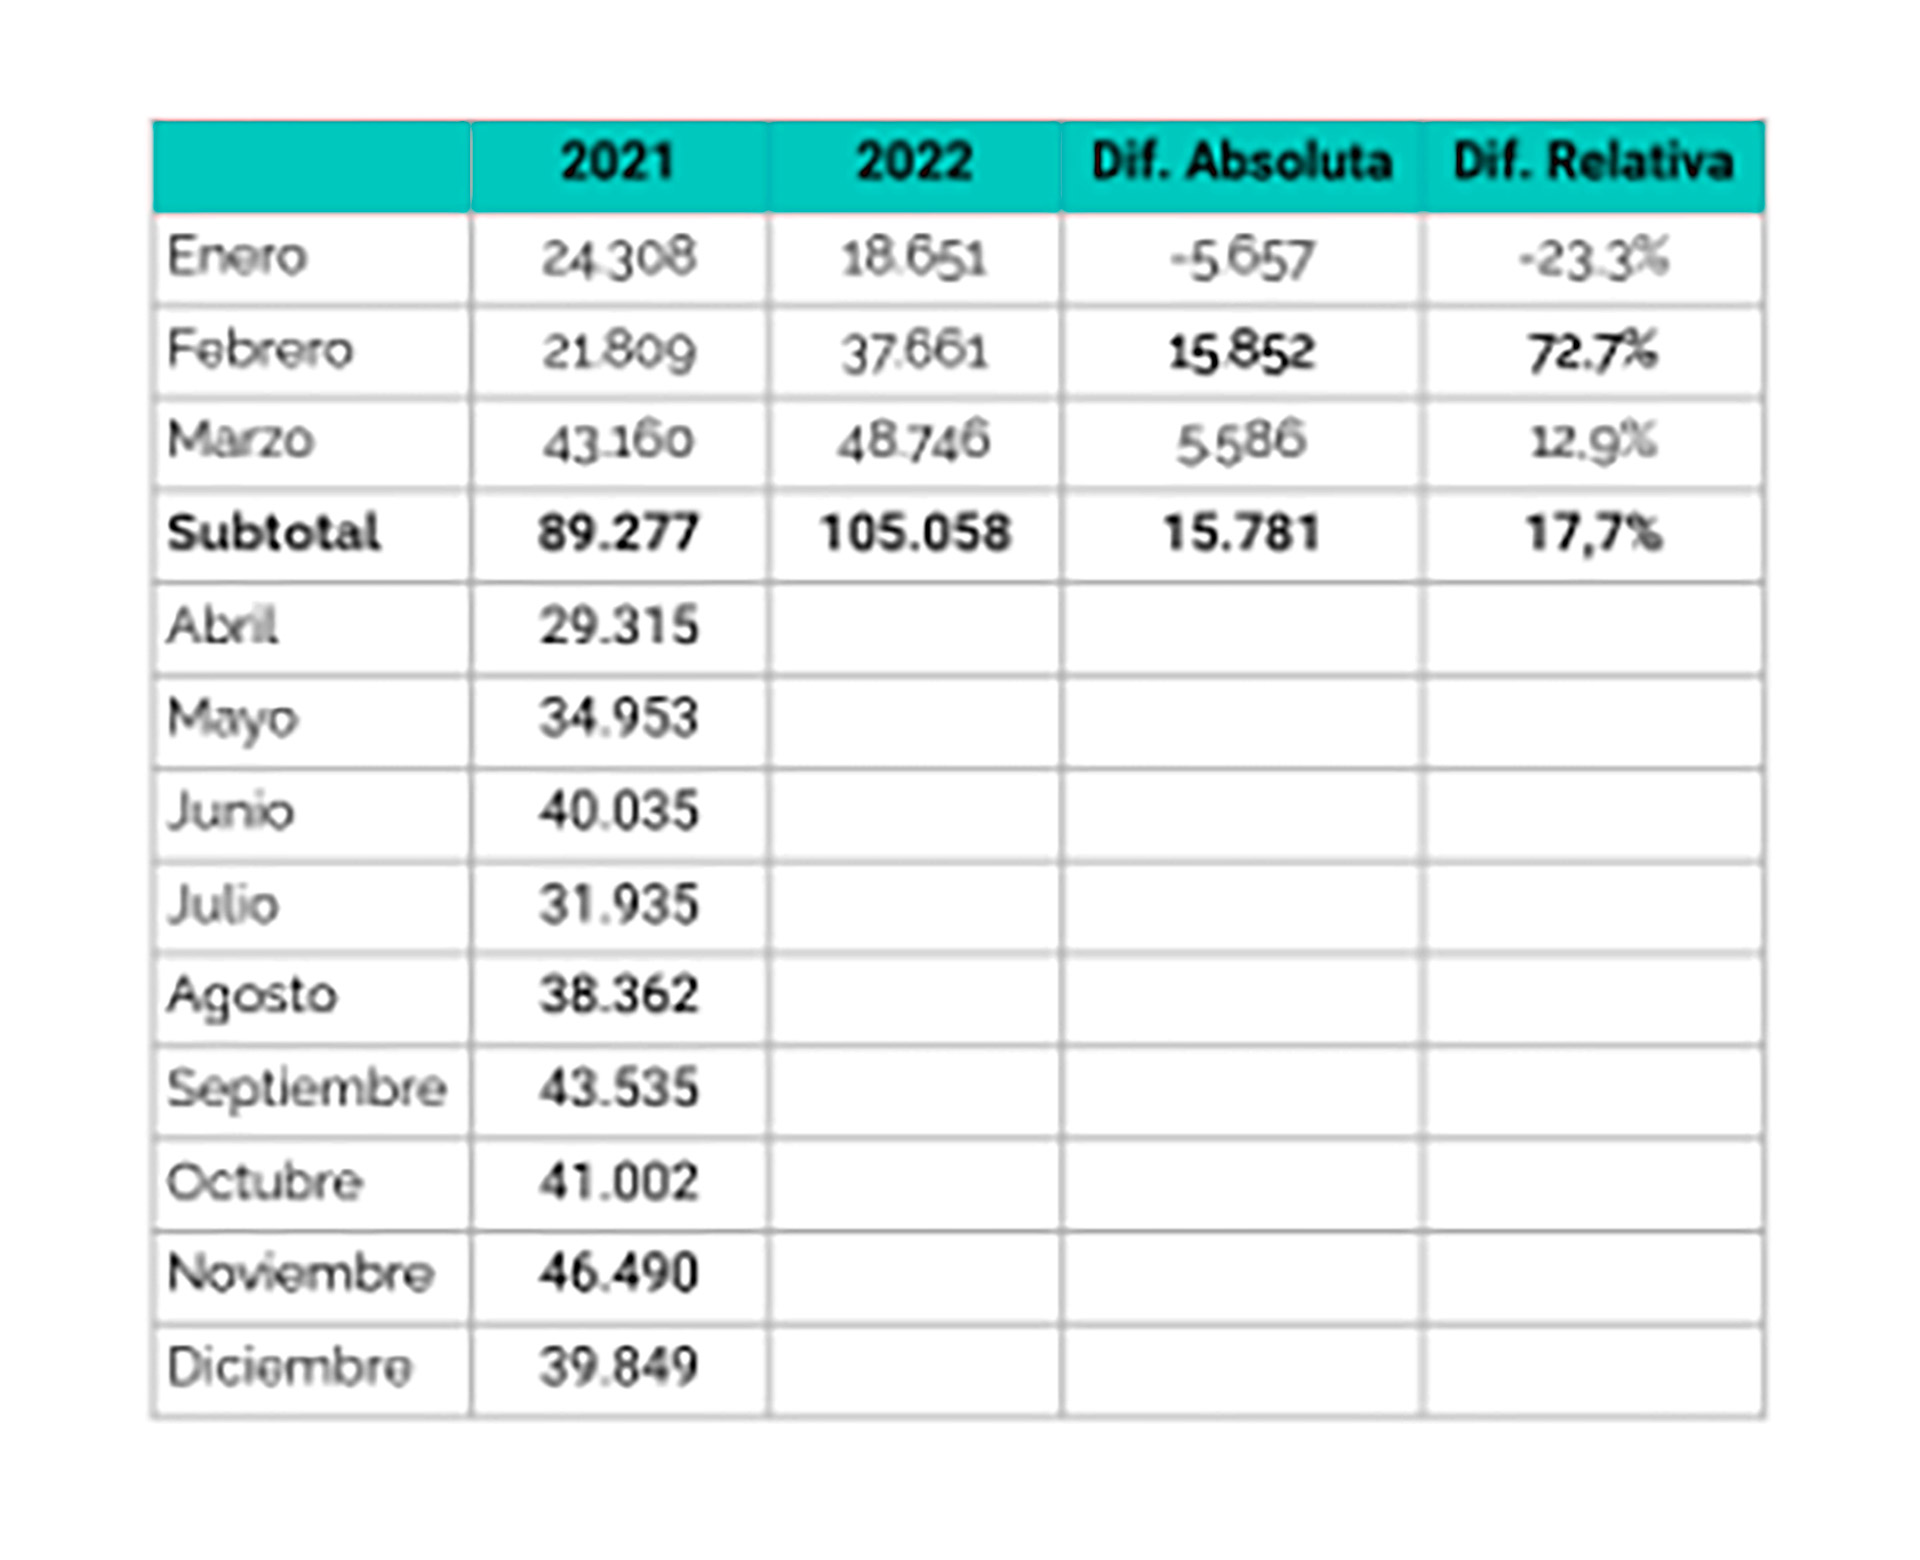 Datos de la producción automotriz a marzo de 2022
Fuente: Adefa